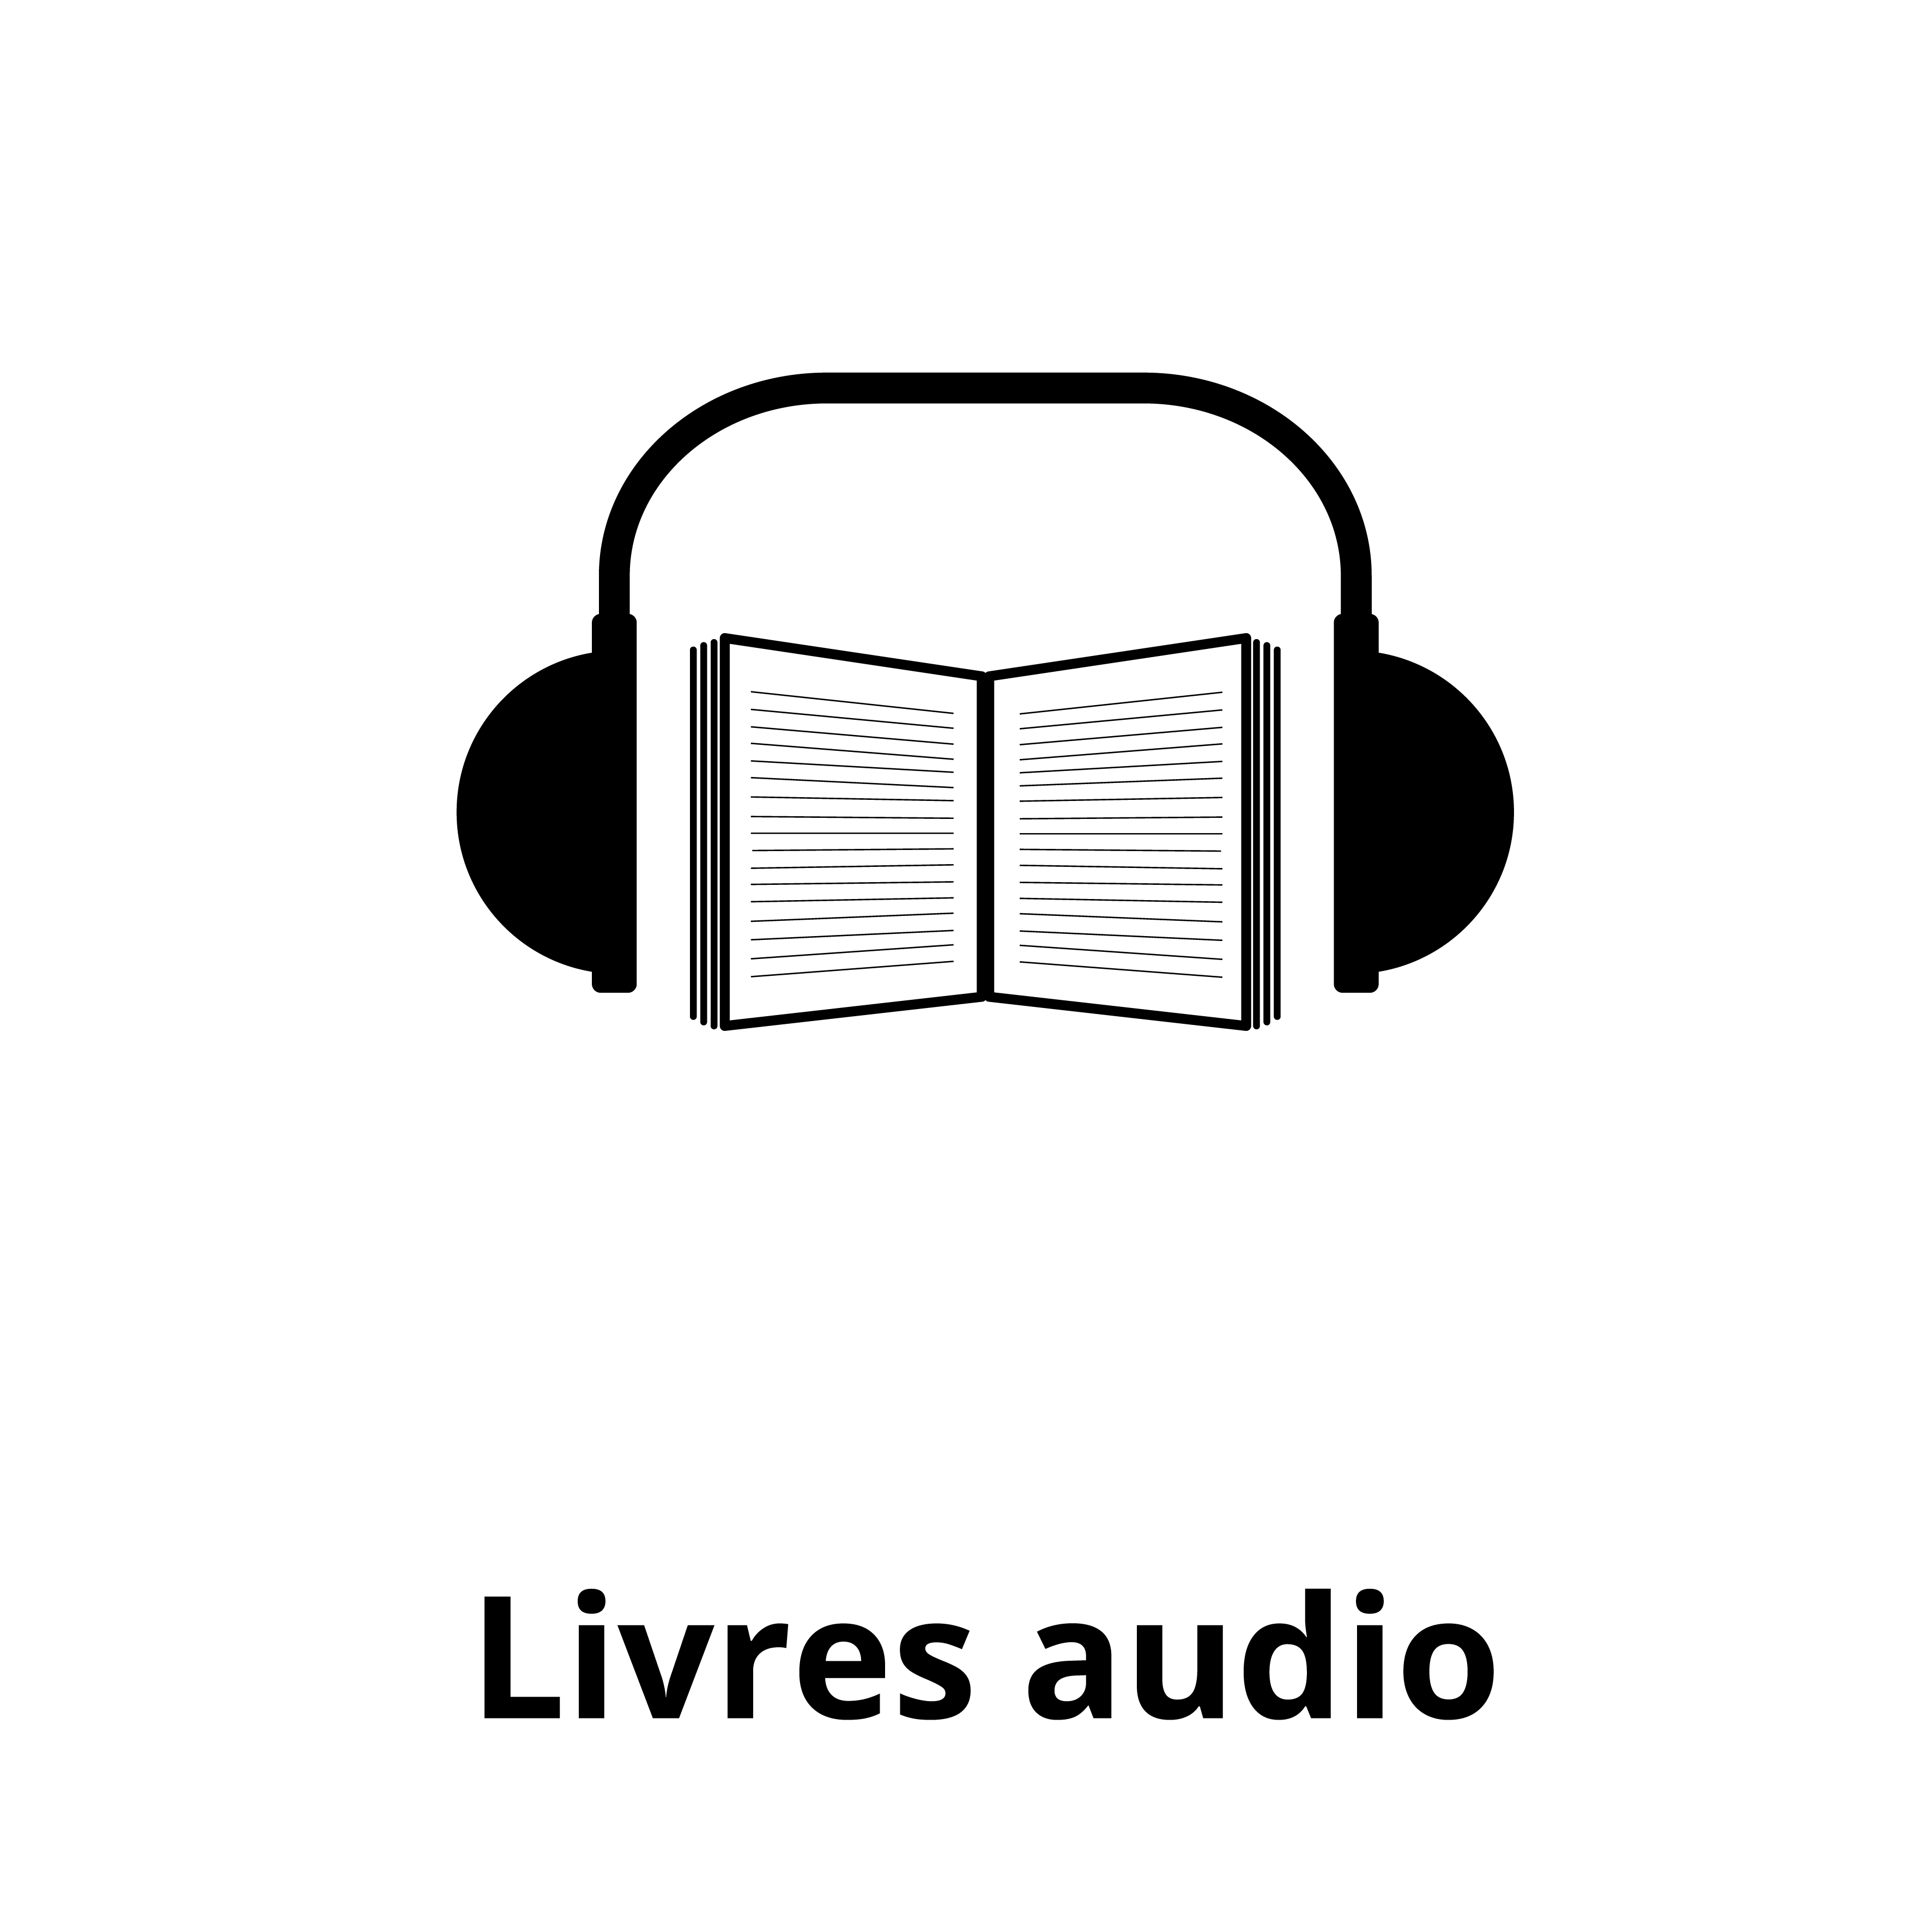 _livres audio